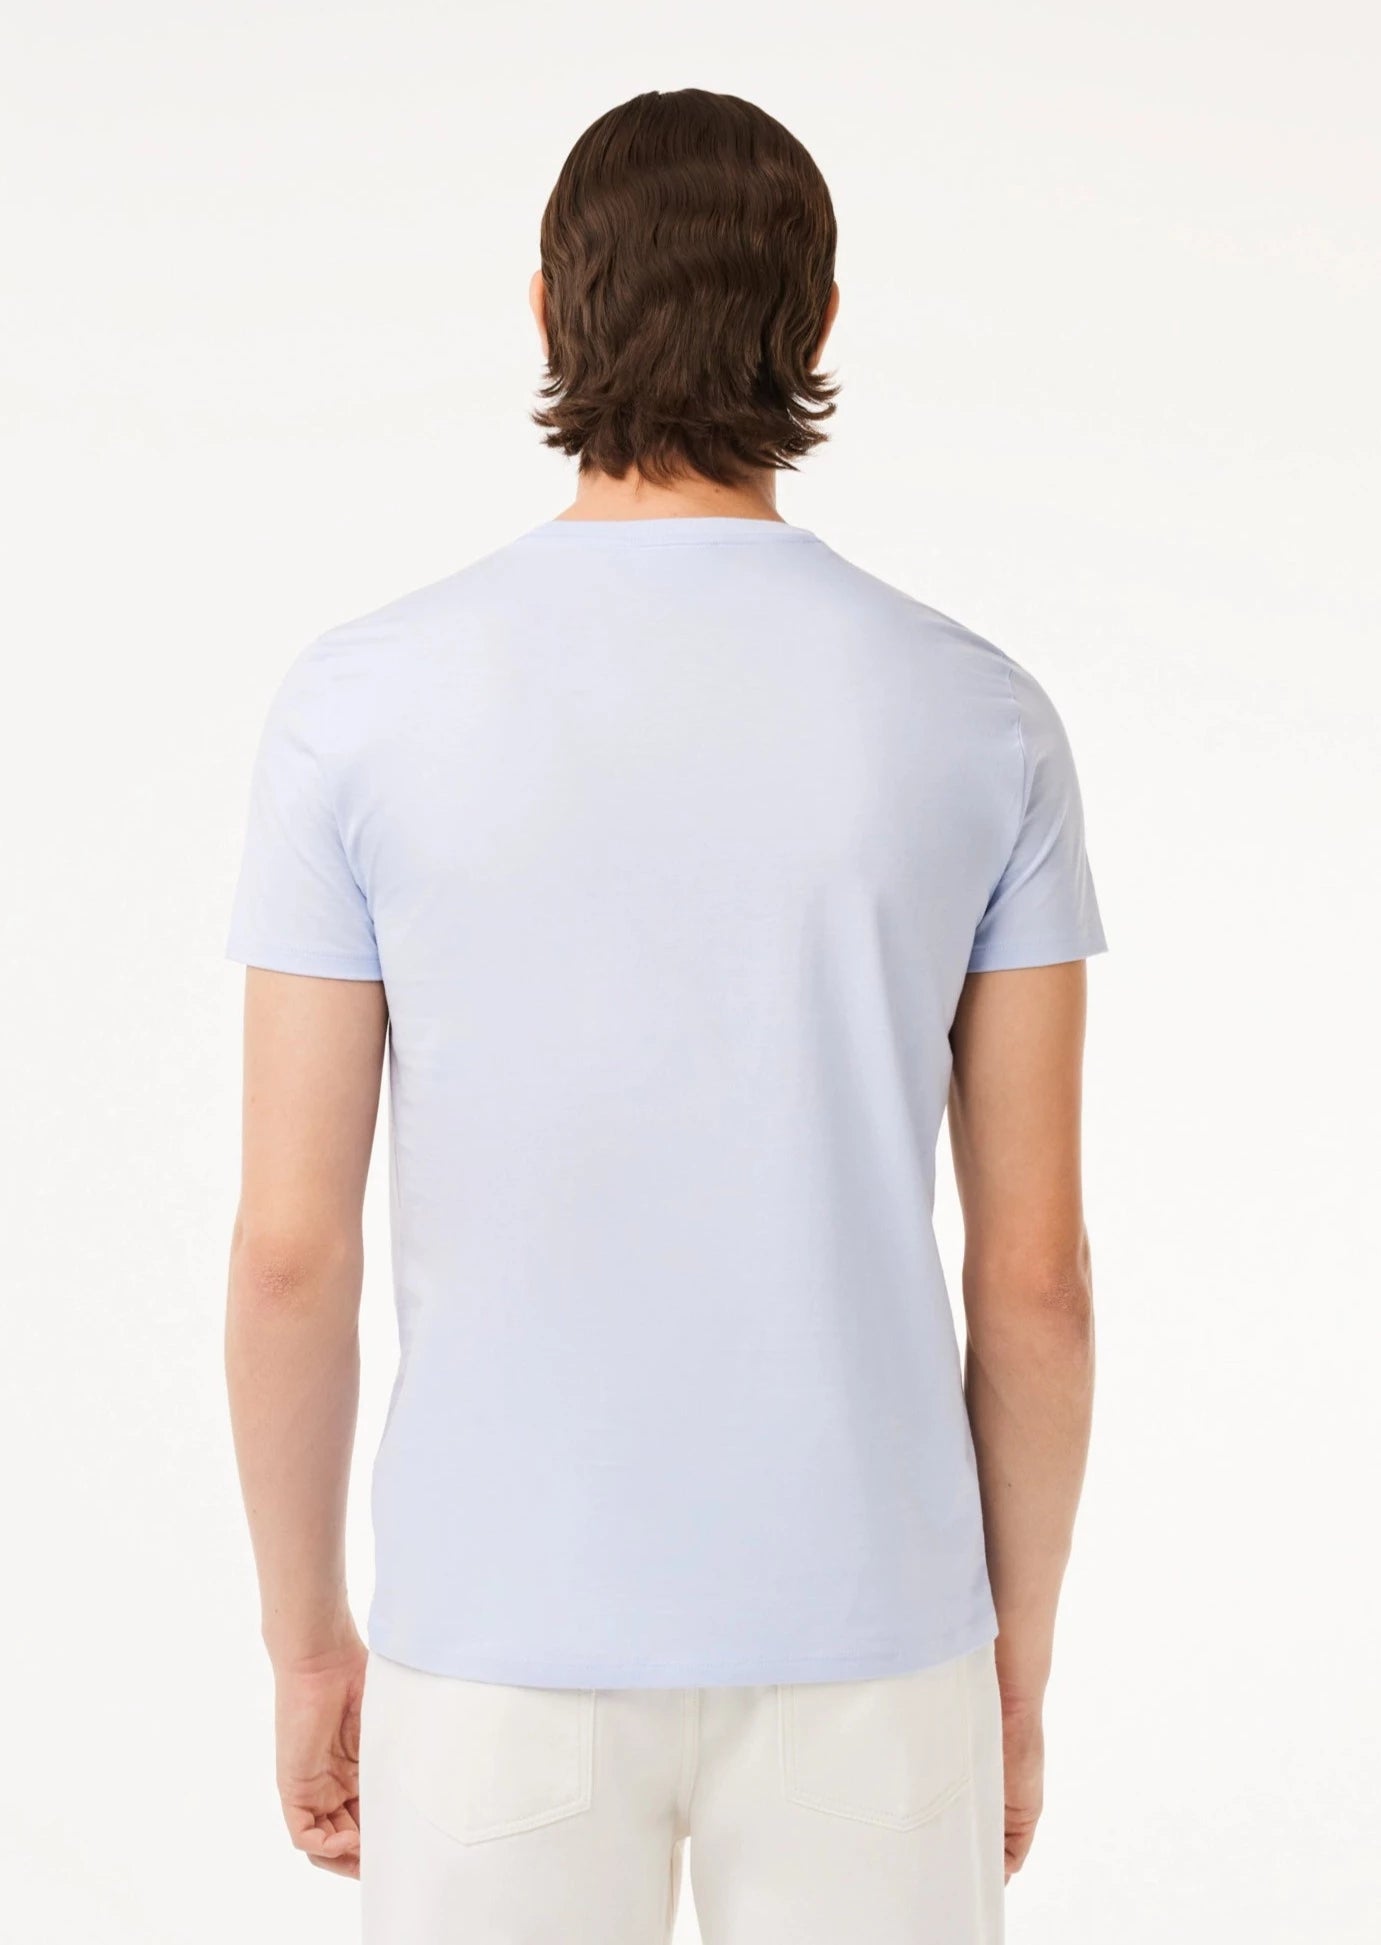 T-shirt homme Lacoste bleu clair | Georgespaul